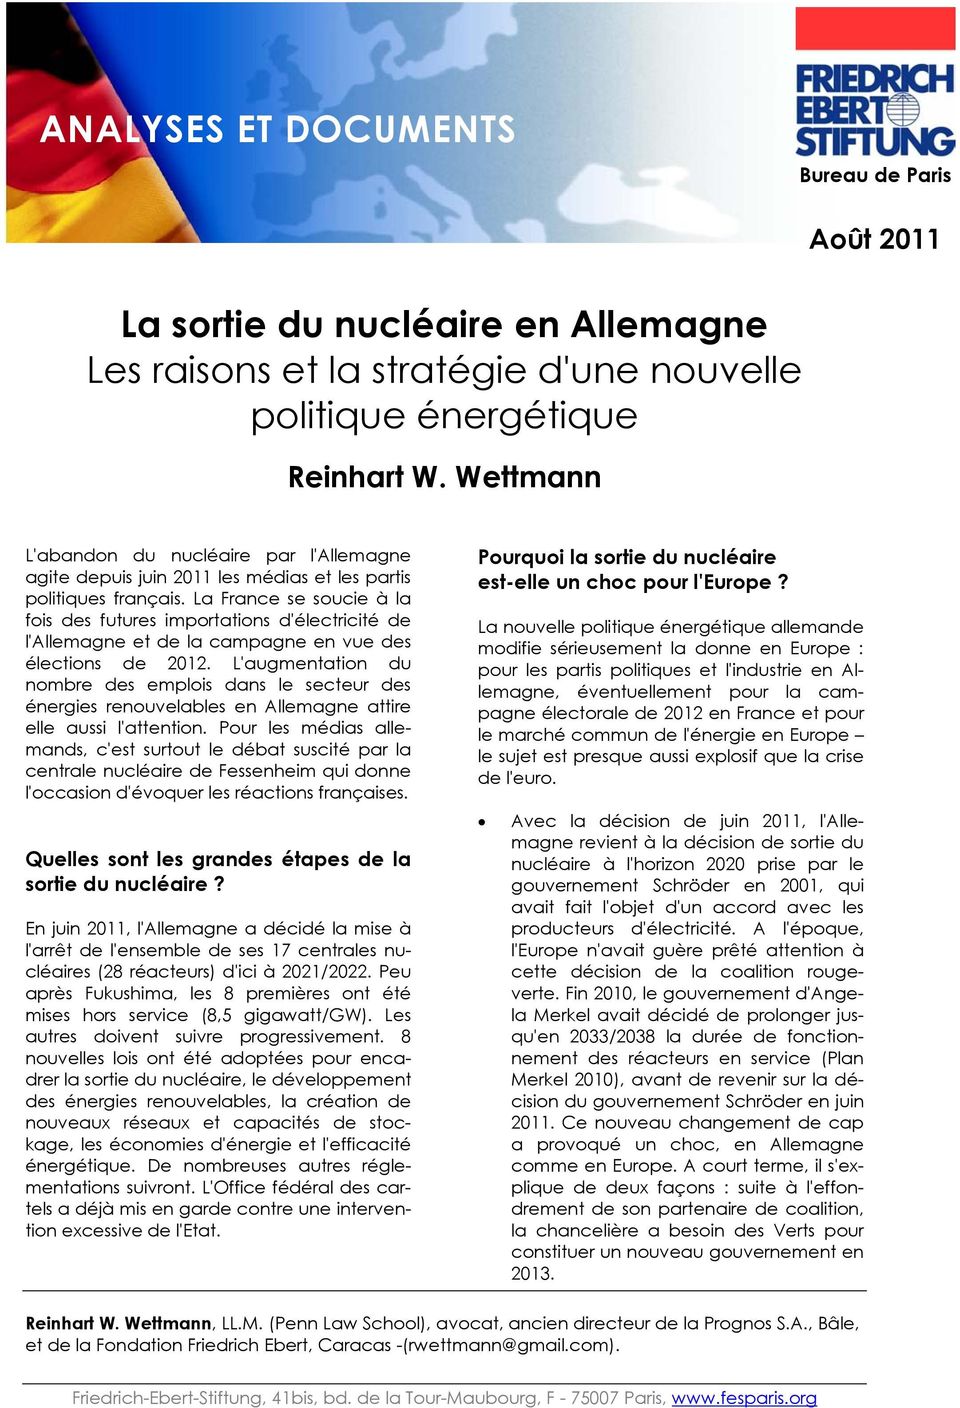 La France se soucie à la fois des futures importations d'électricité de l'allemagne et de la campagne en vue des élections de 2012.